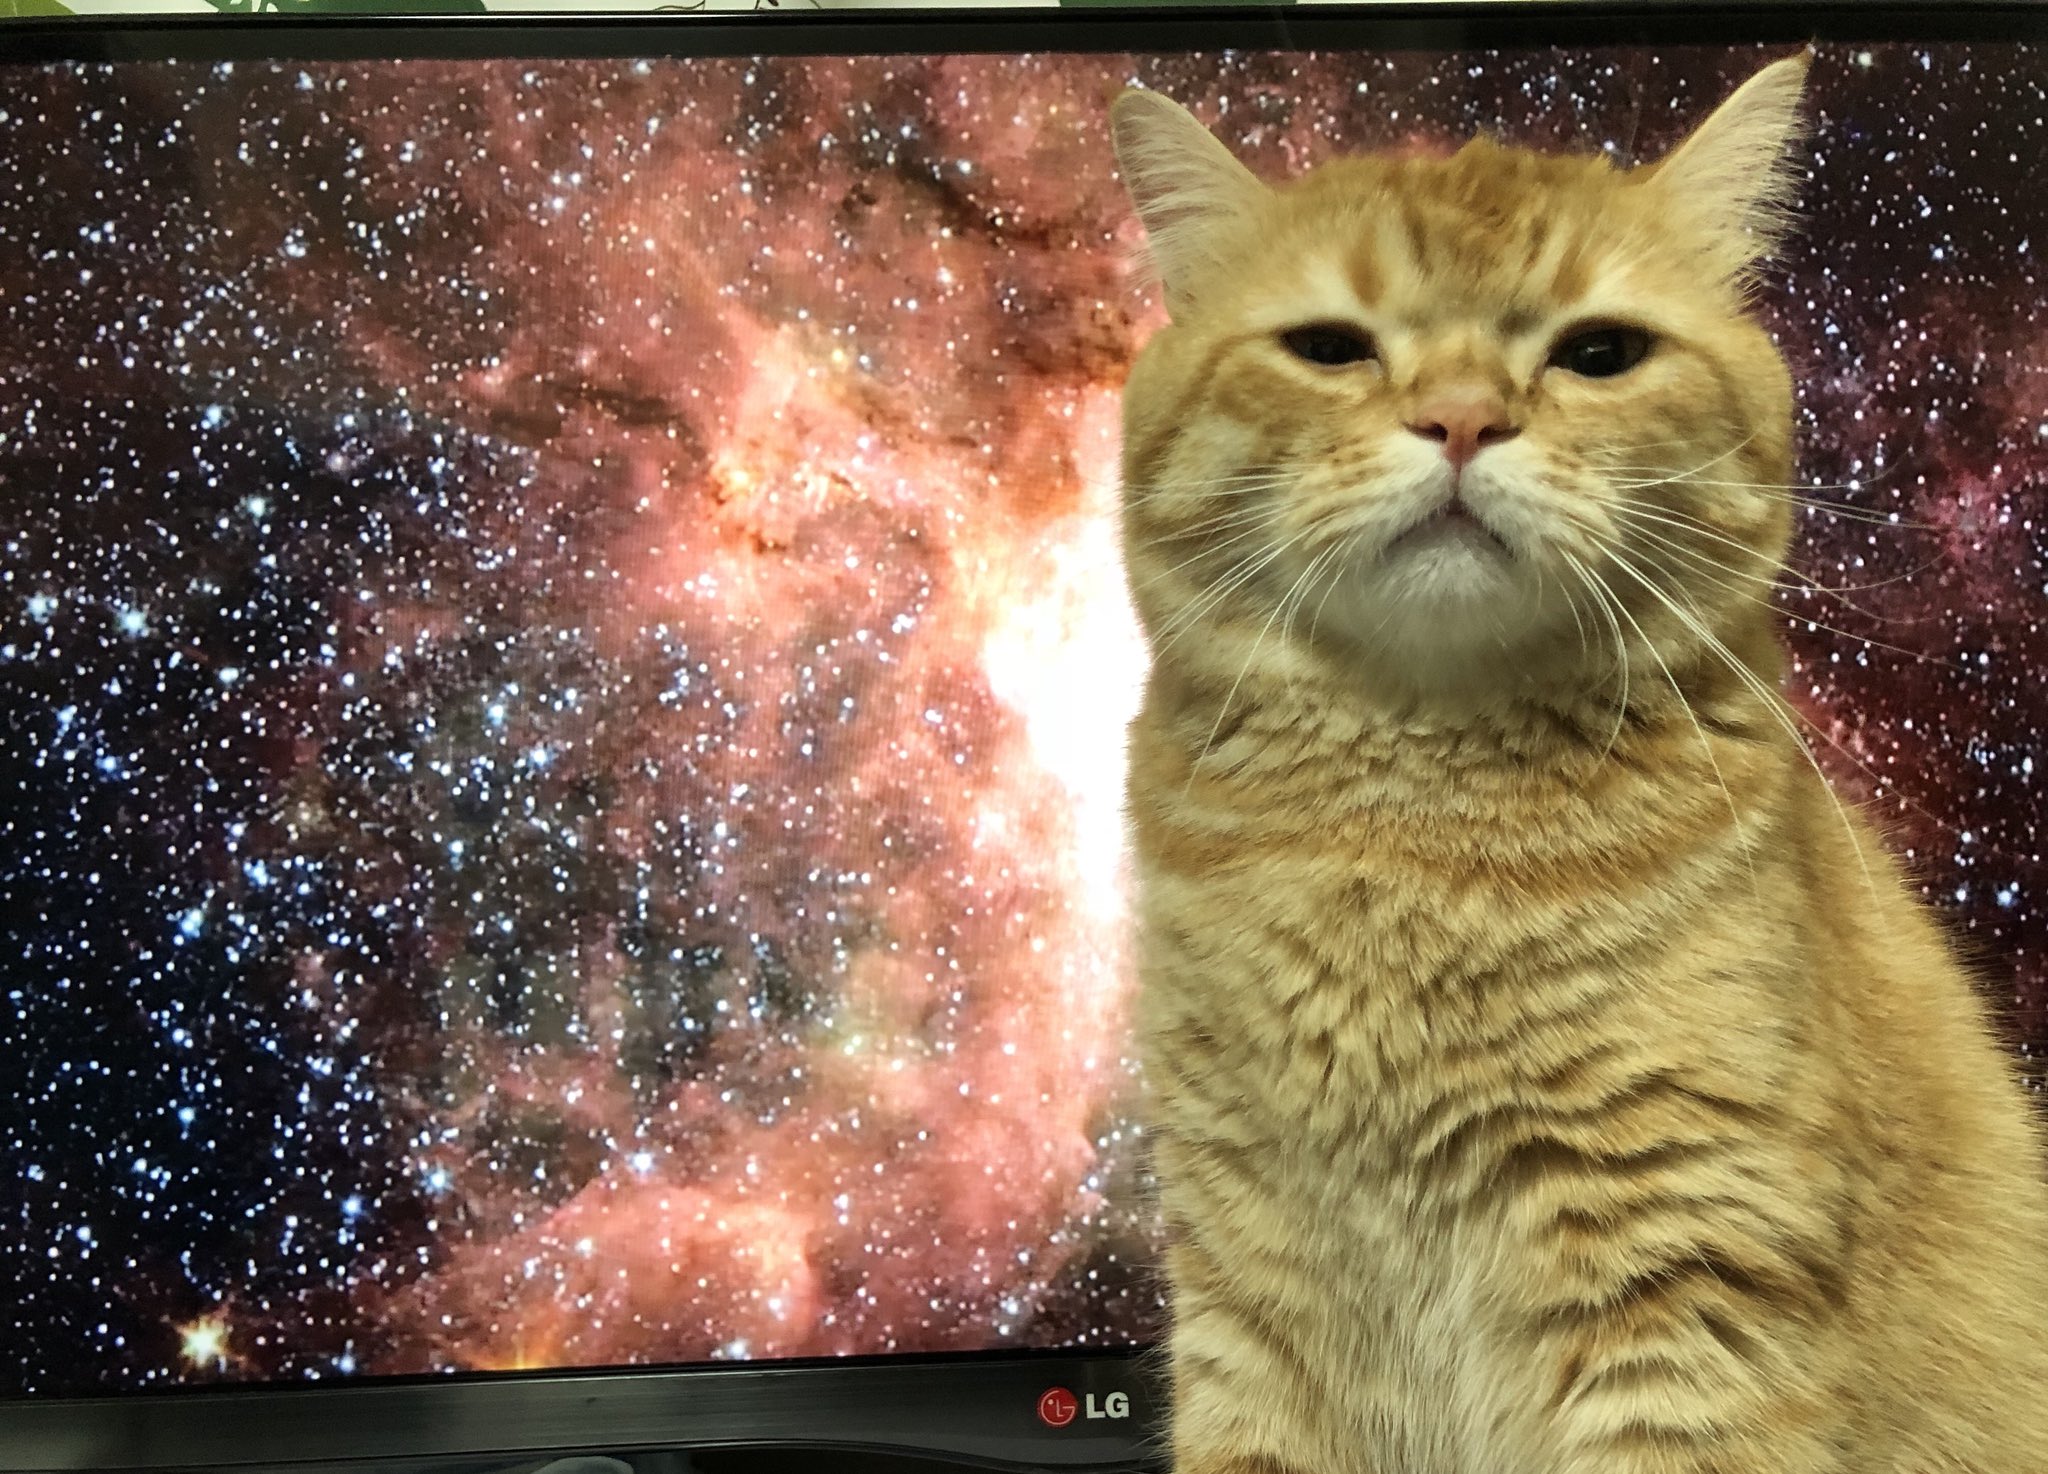 电视正在播放类似宇宙的场景,这时猫跑了过来